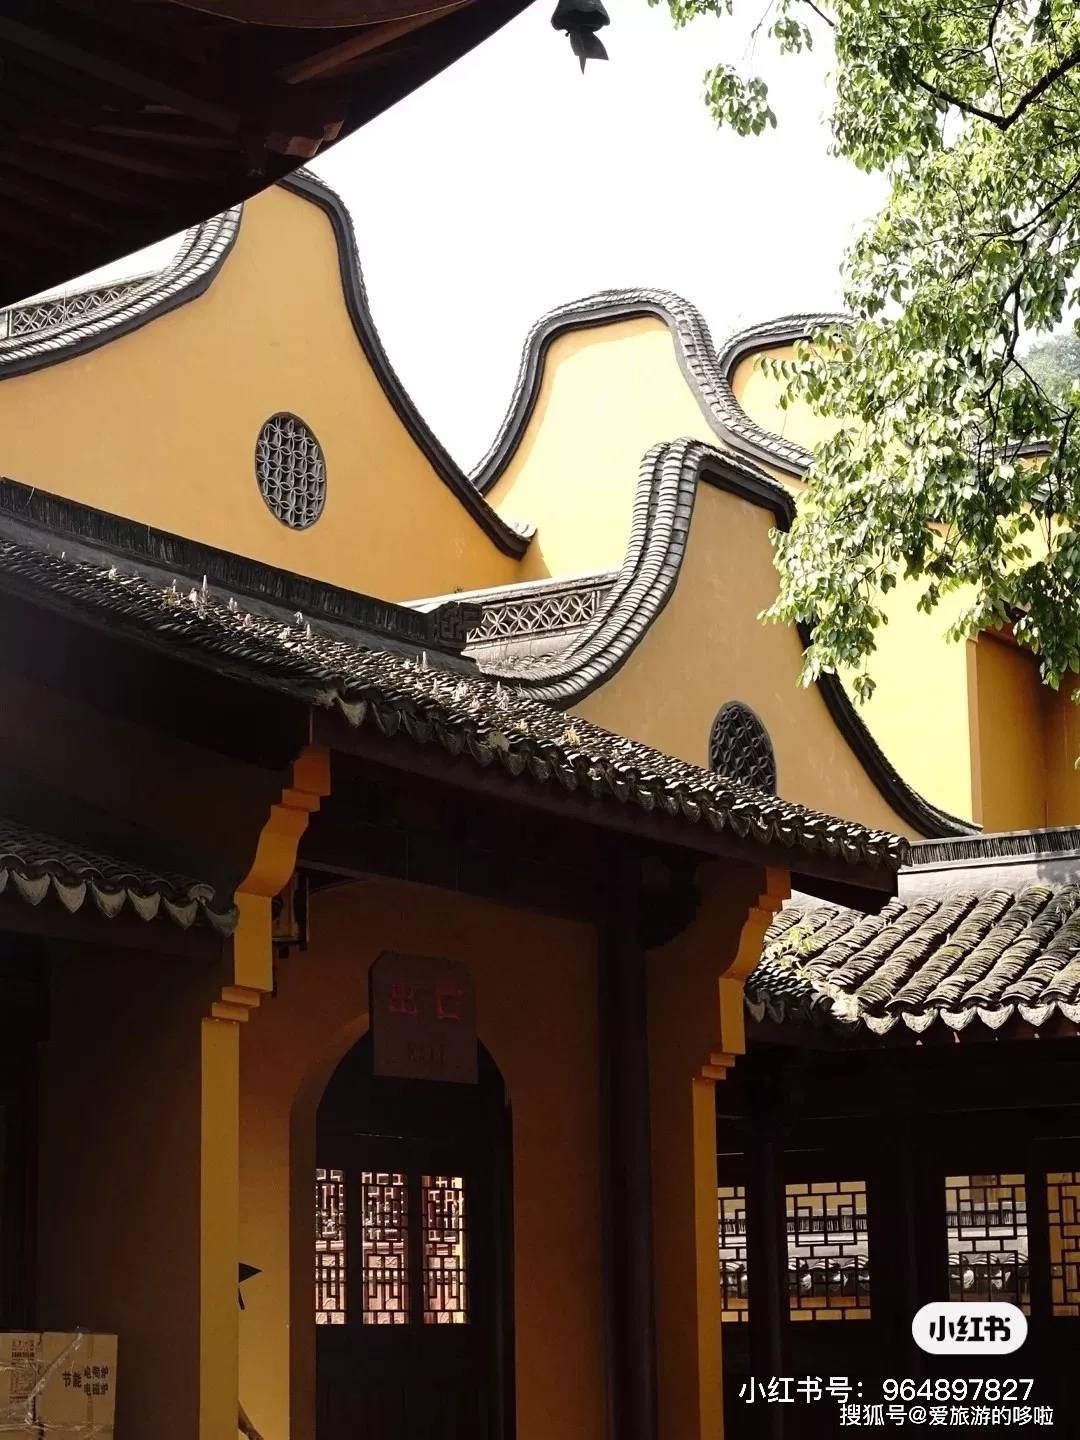 比灵隐寺更受杭州人喜爱的寺院，连寺名都很少听说，却美了上千年